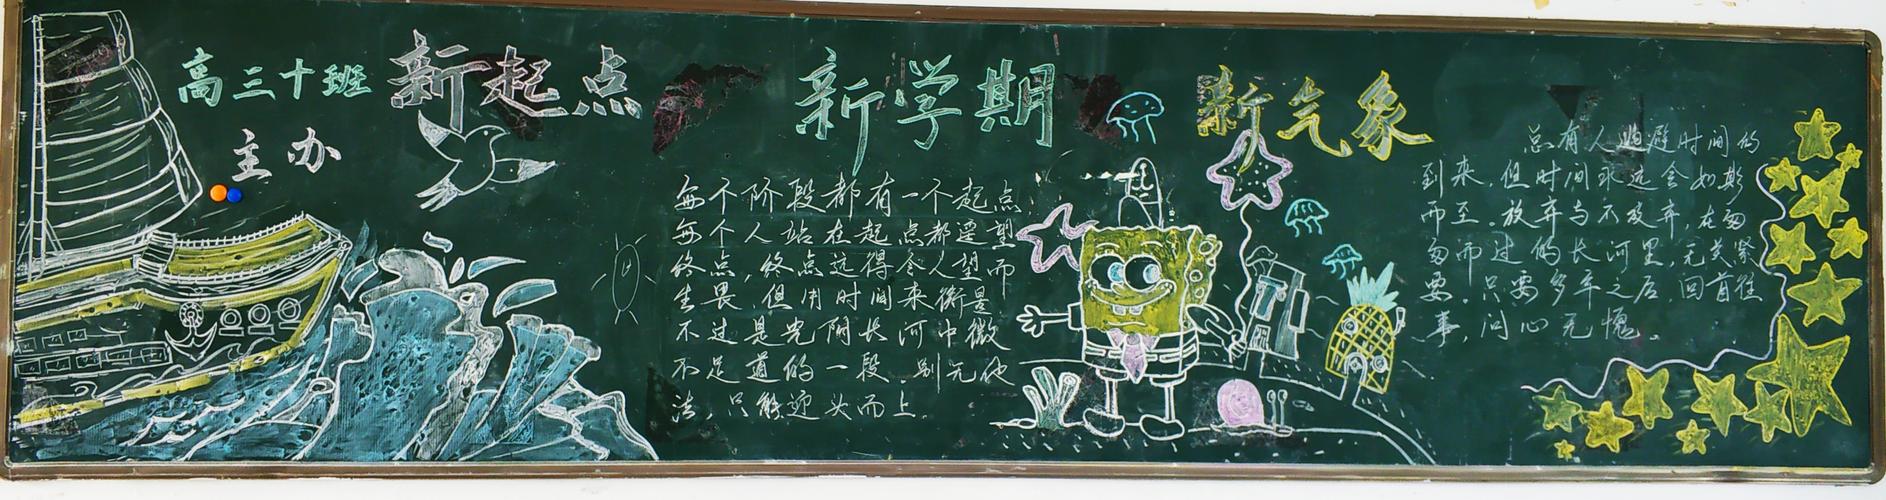 汉阳一中9月黑板报评比 写美篇 高三年级正处紧张复习备考的关键时期